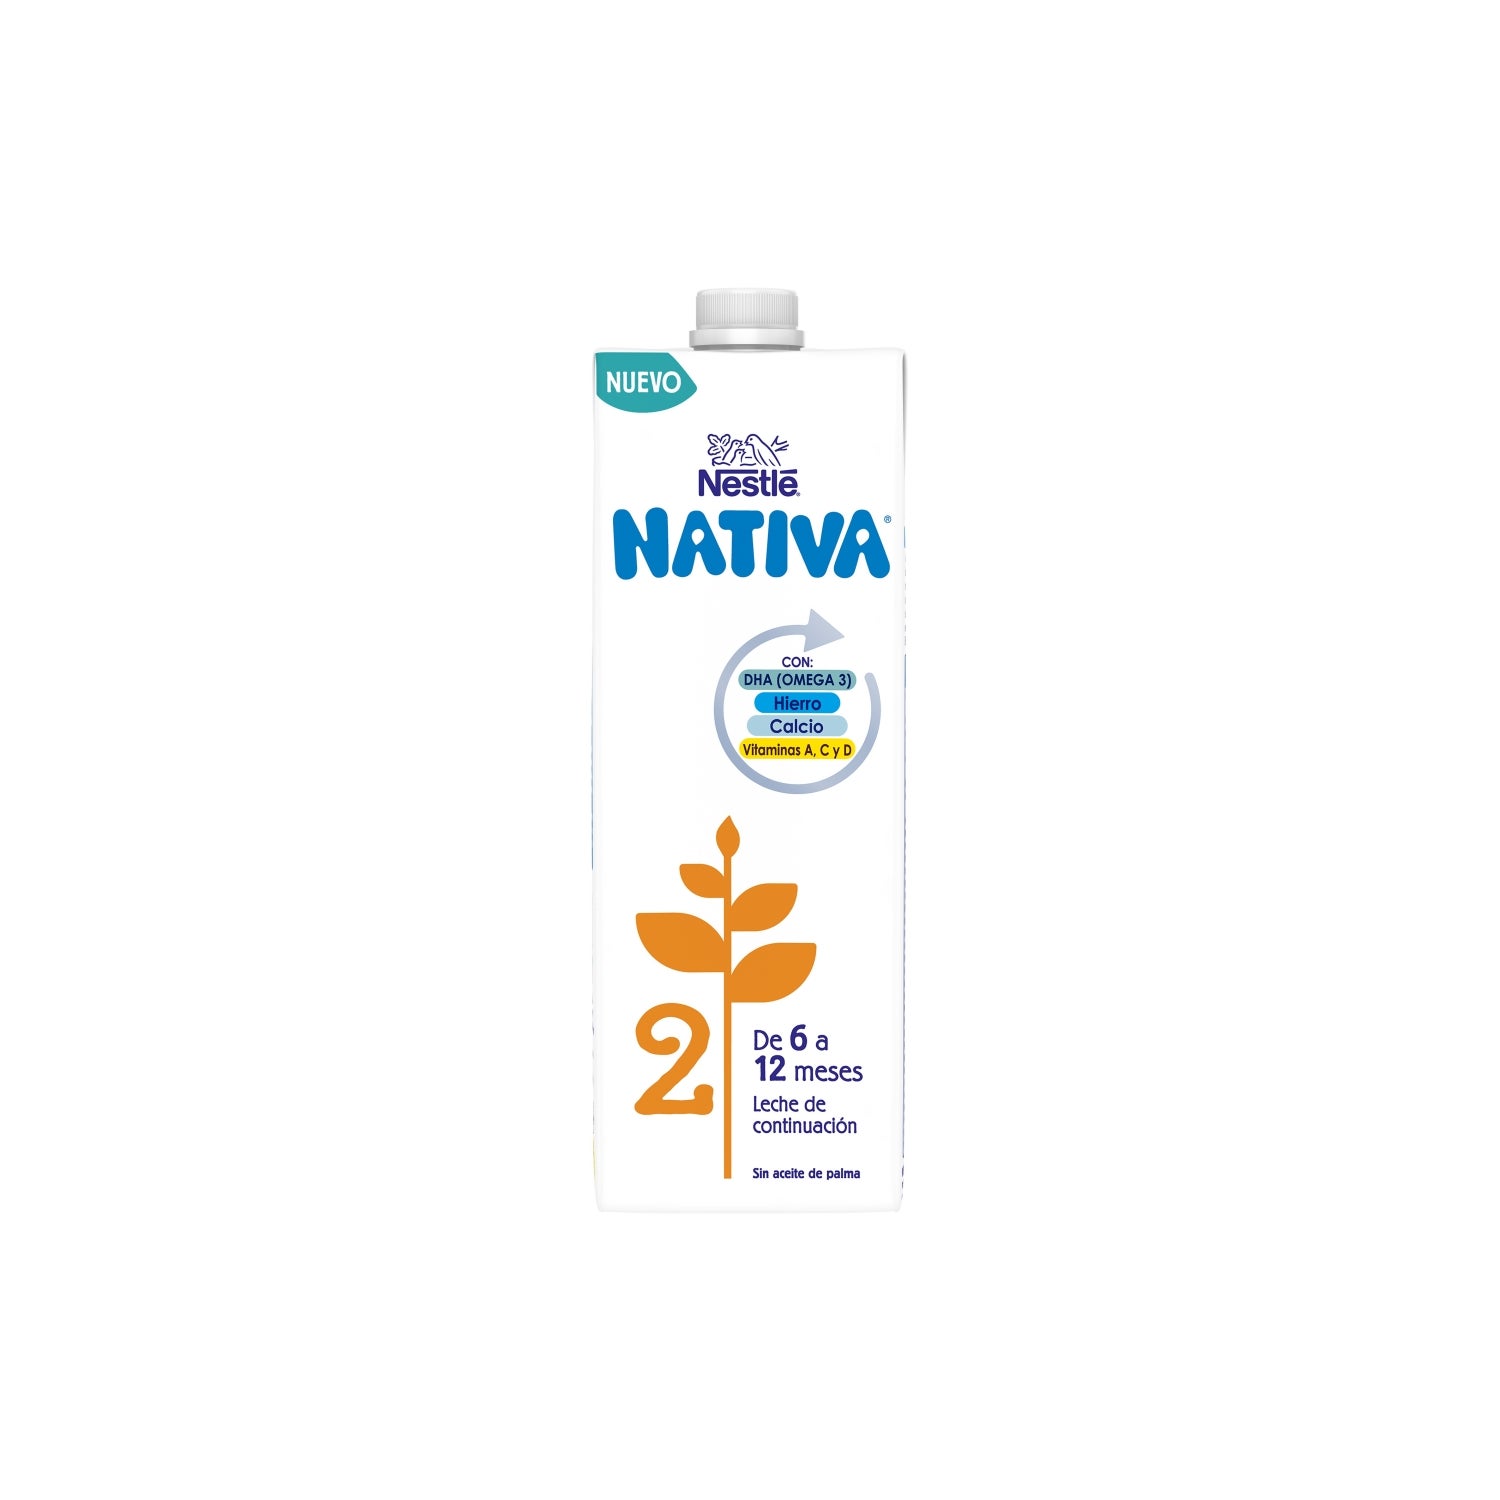 Nestlé Nativa 2 800g